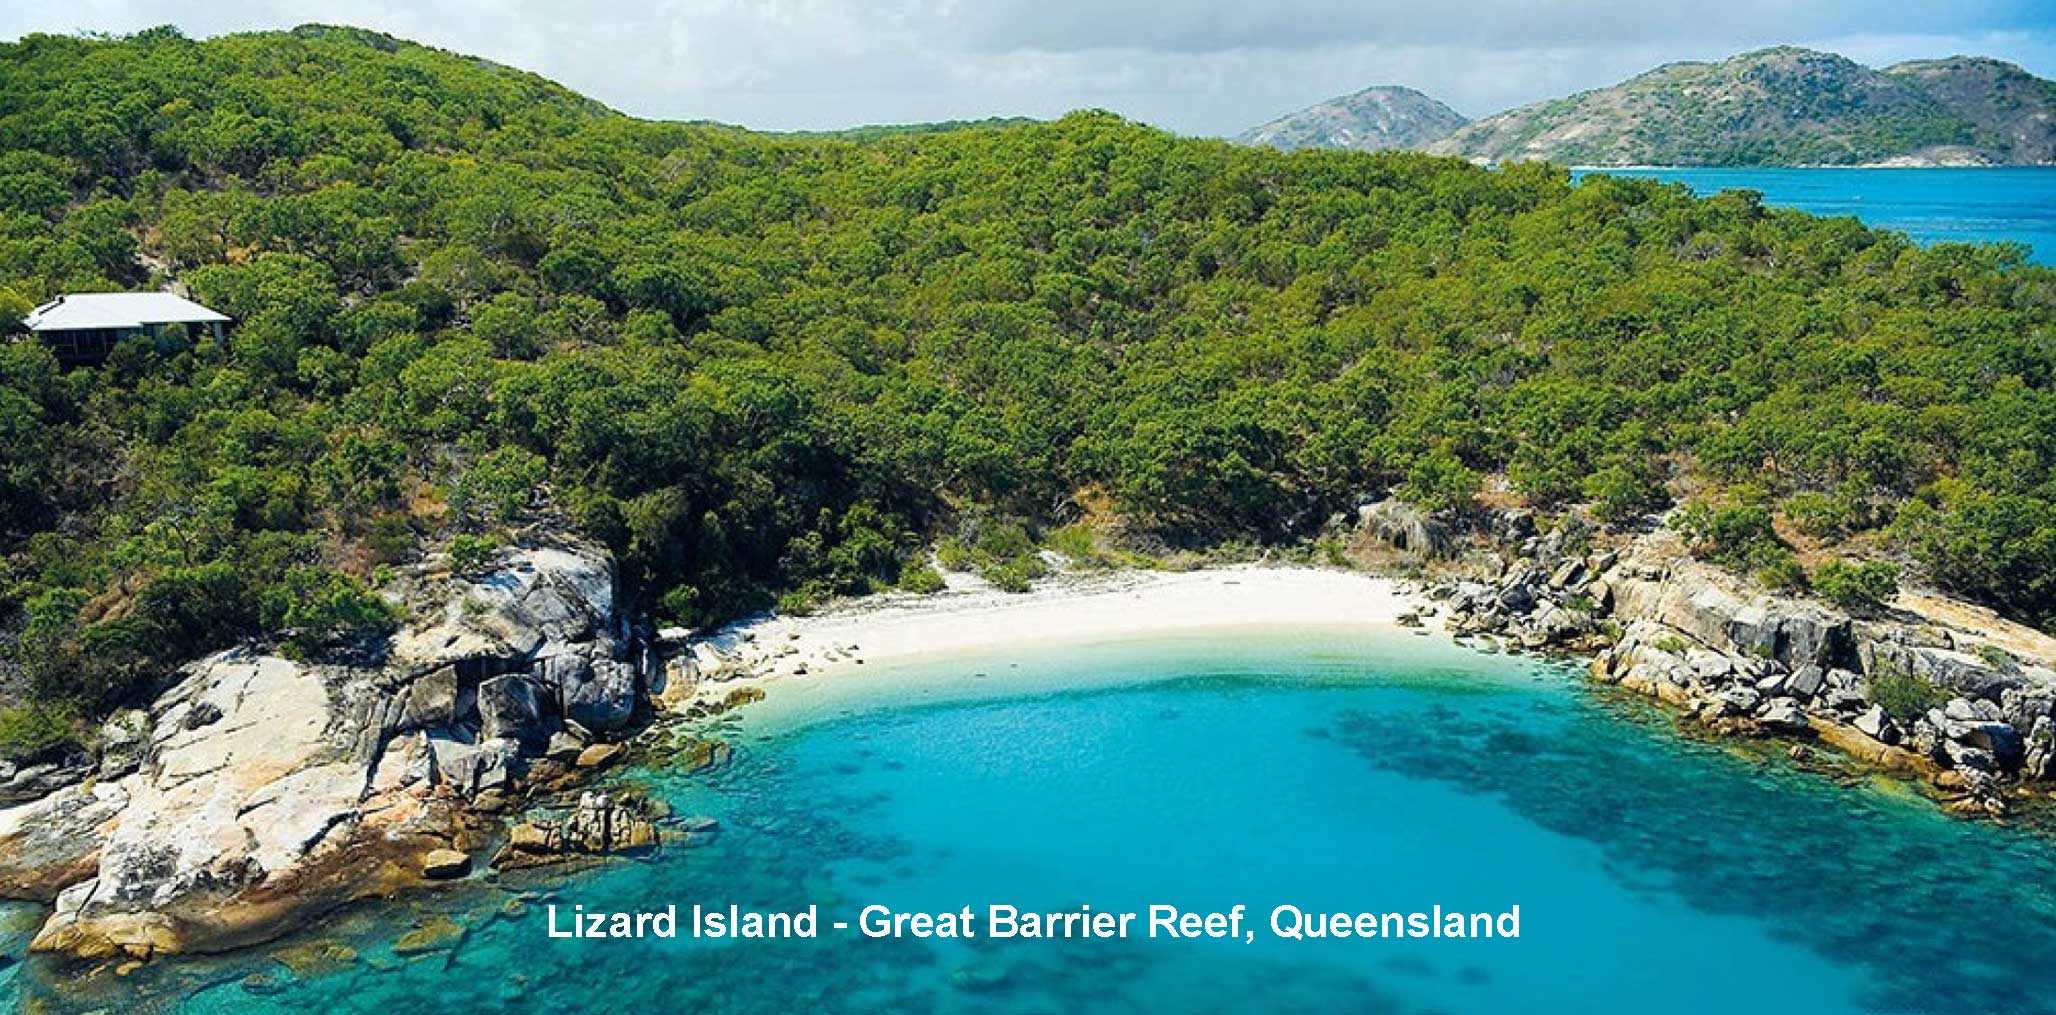 Lizard Island - Great Barrier Reef, Queensland